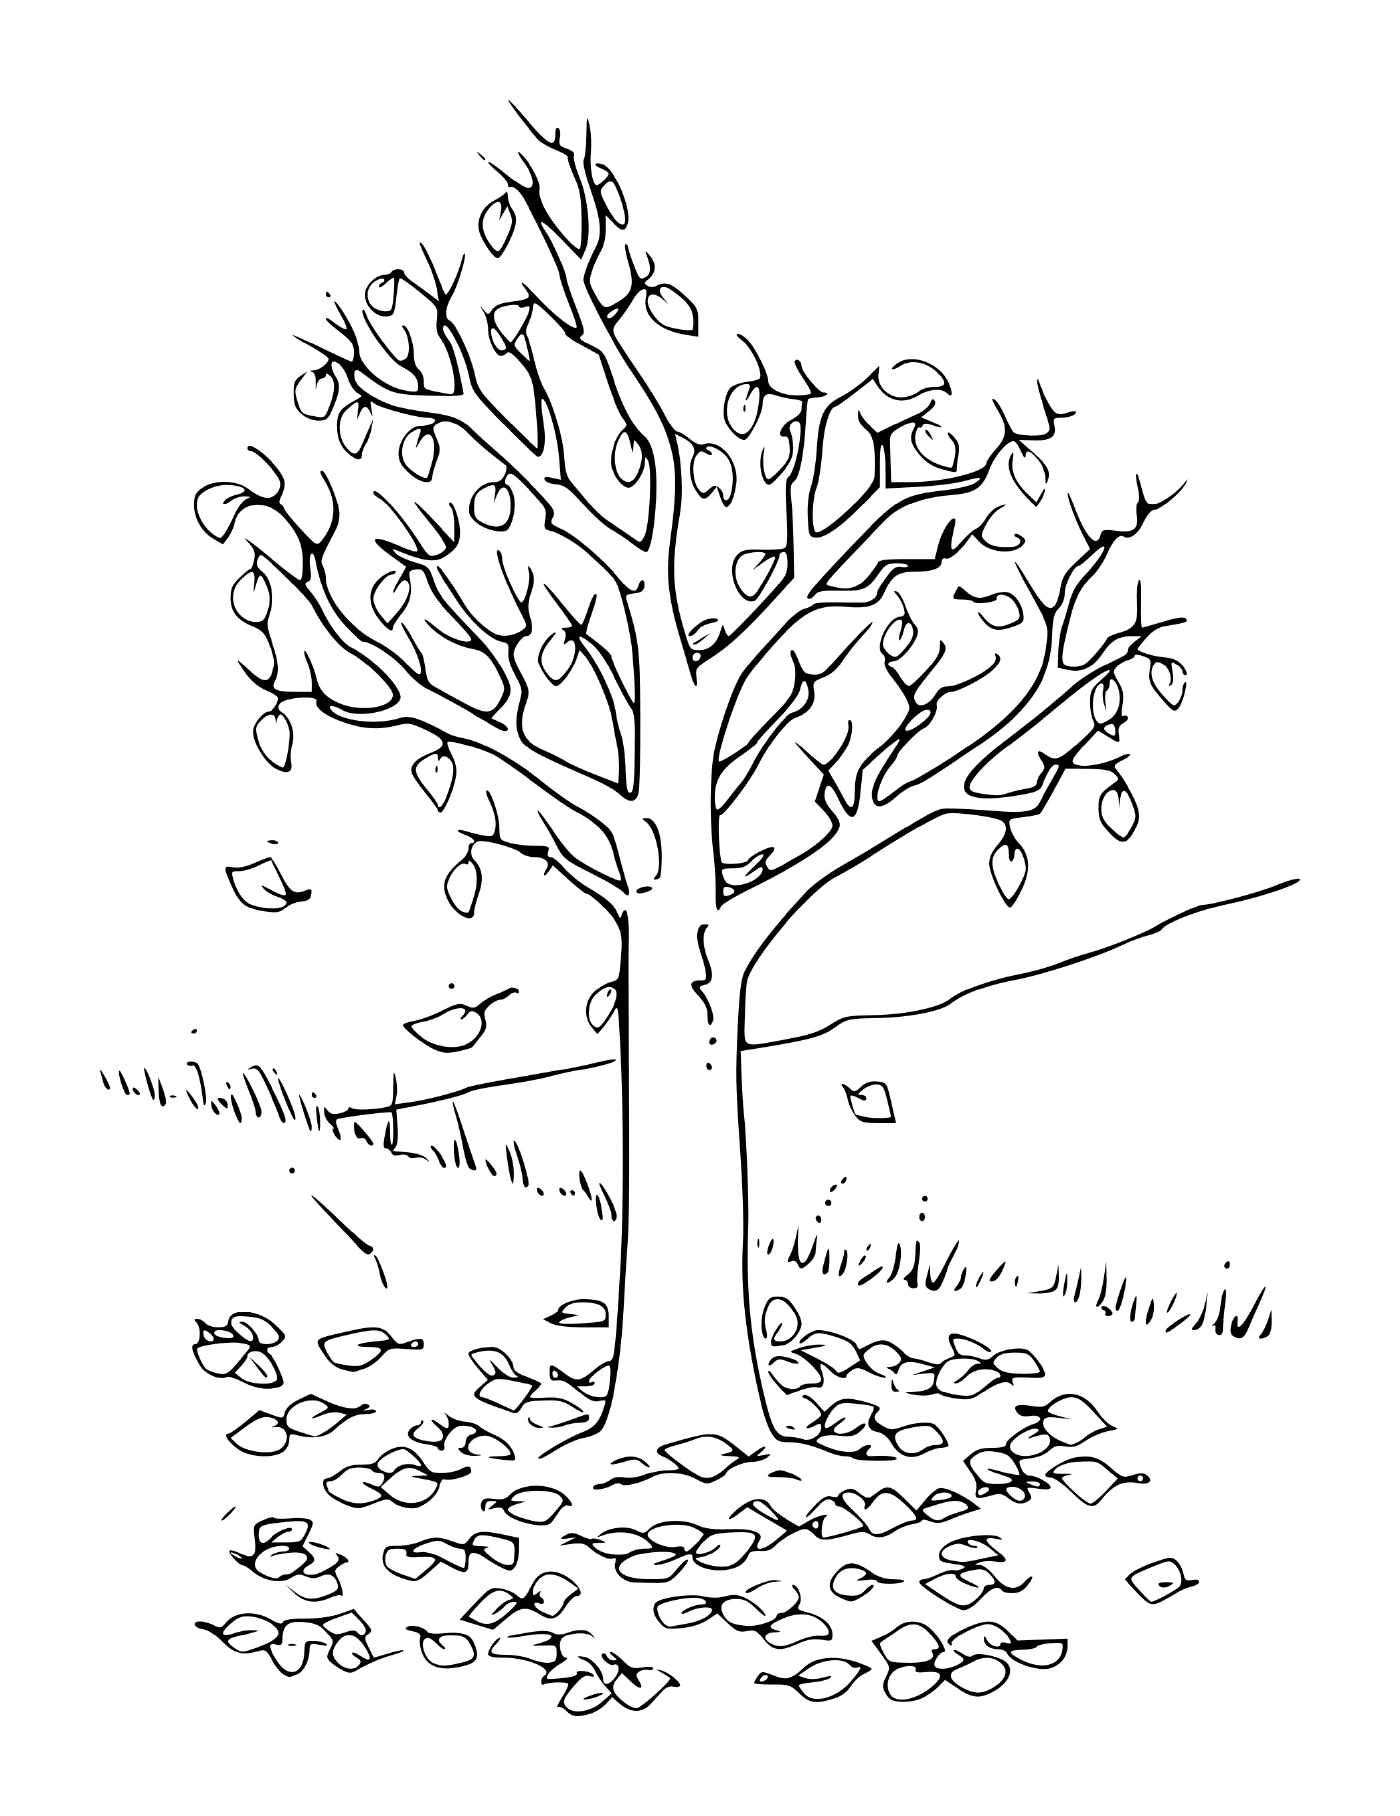  有叶子的秋树 